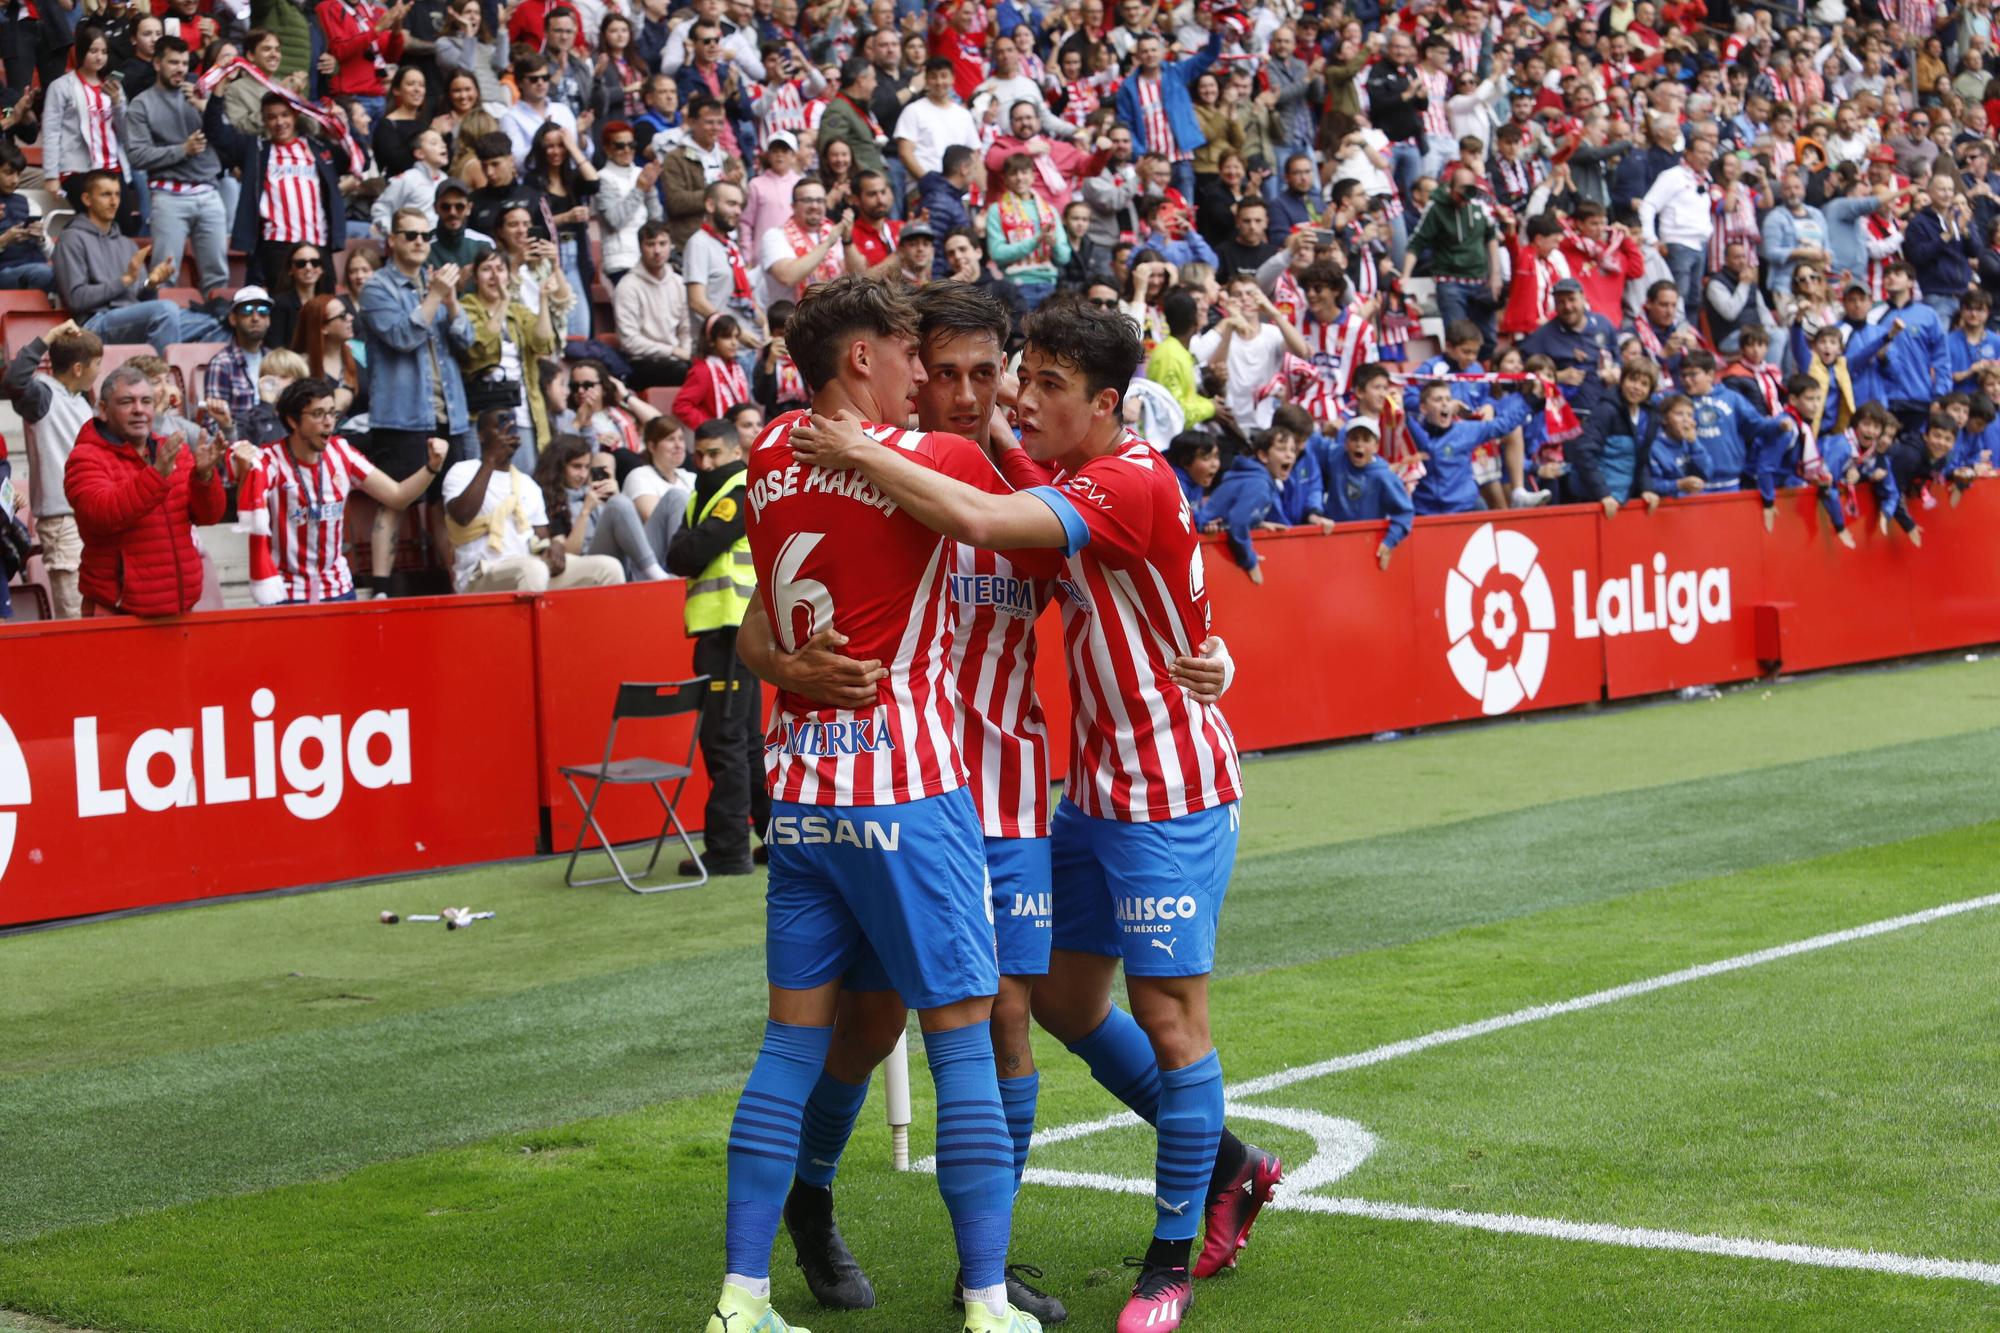 EN IMÁGENES: El Sporting vence al Lugo en El Molinón con un gran ambiente